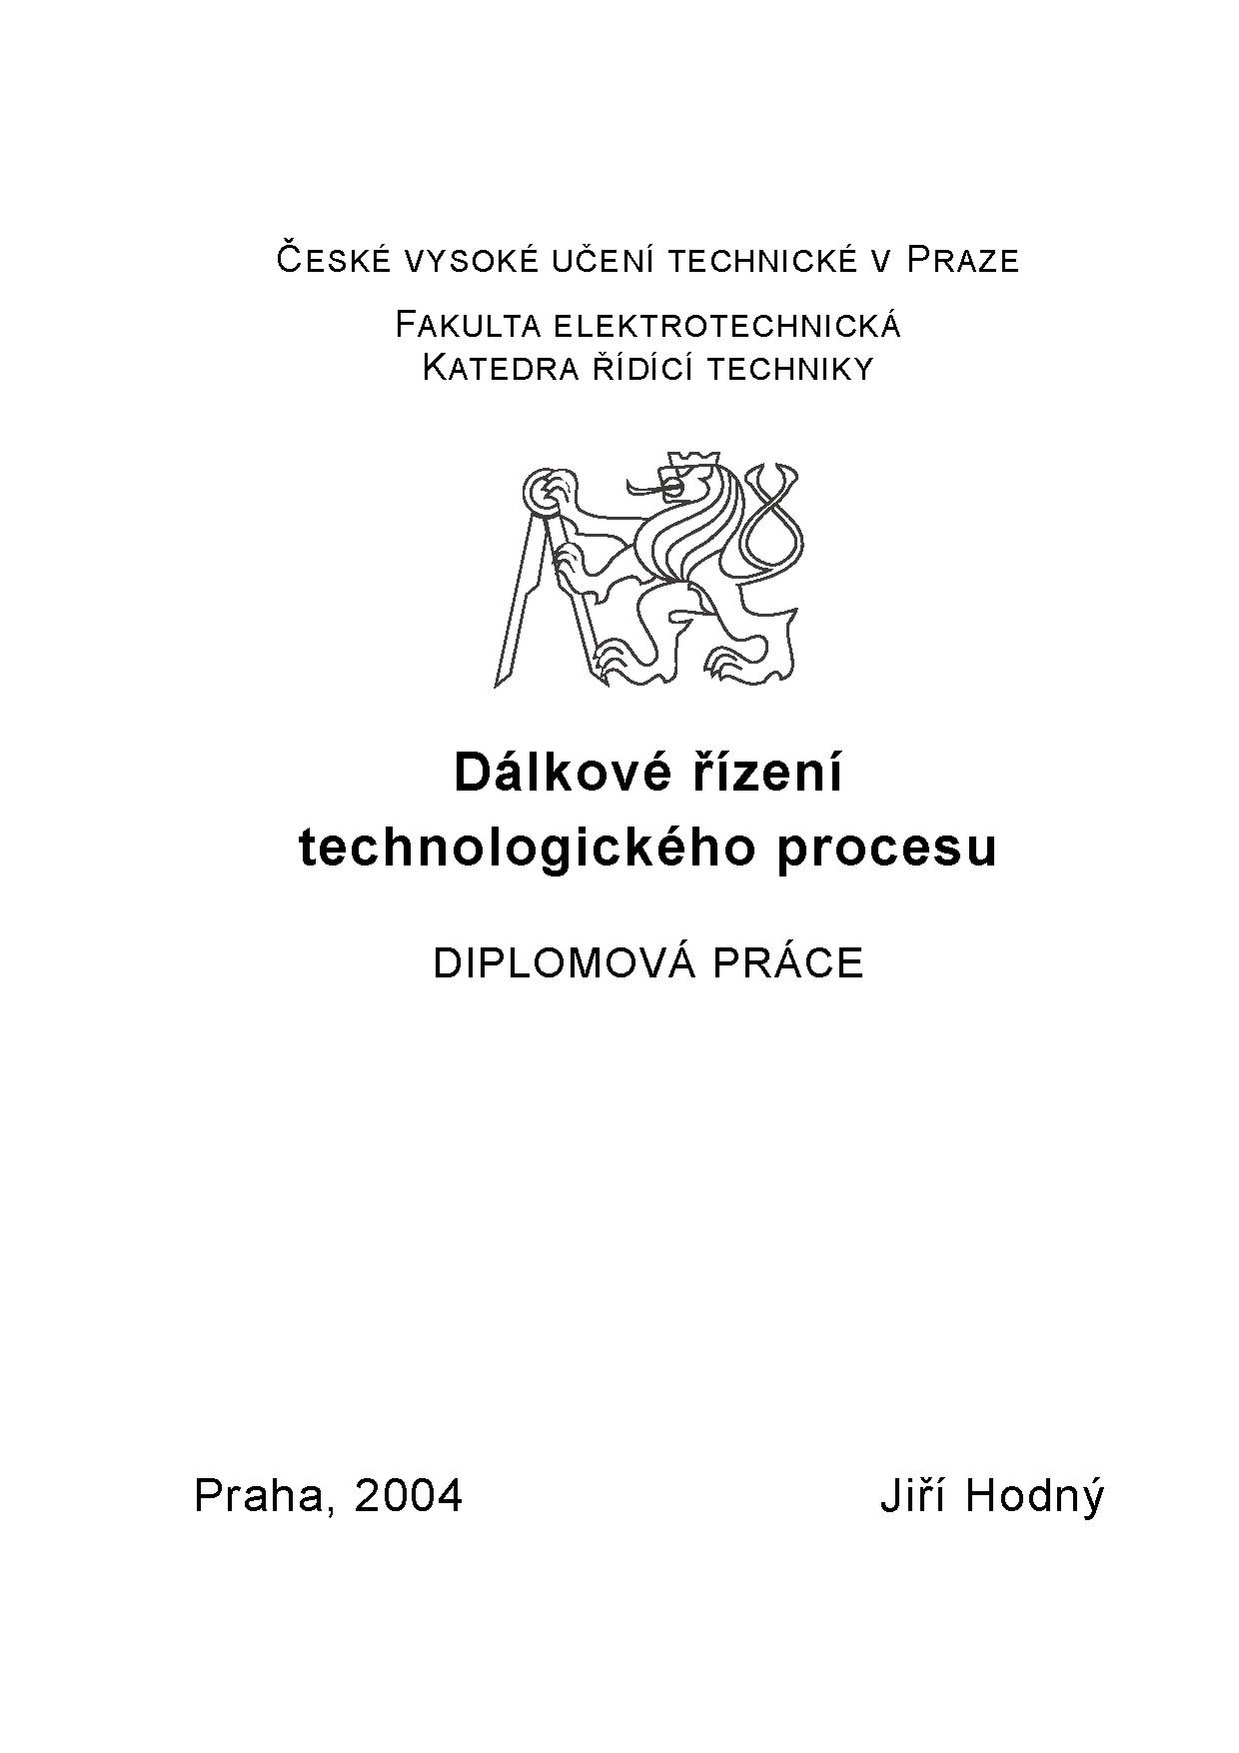 Dp 2004 hodny jiri.pdf